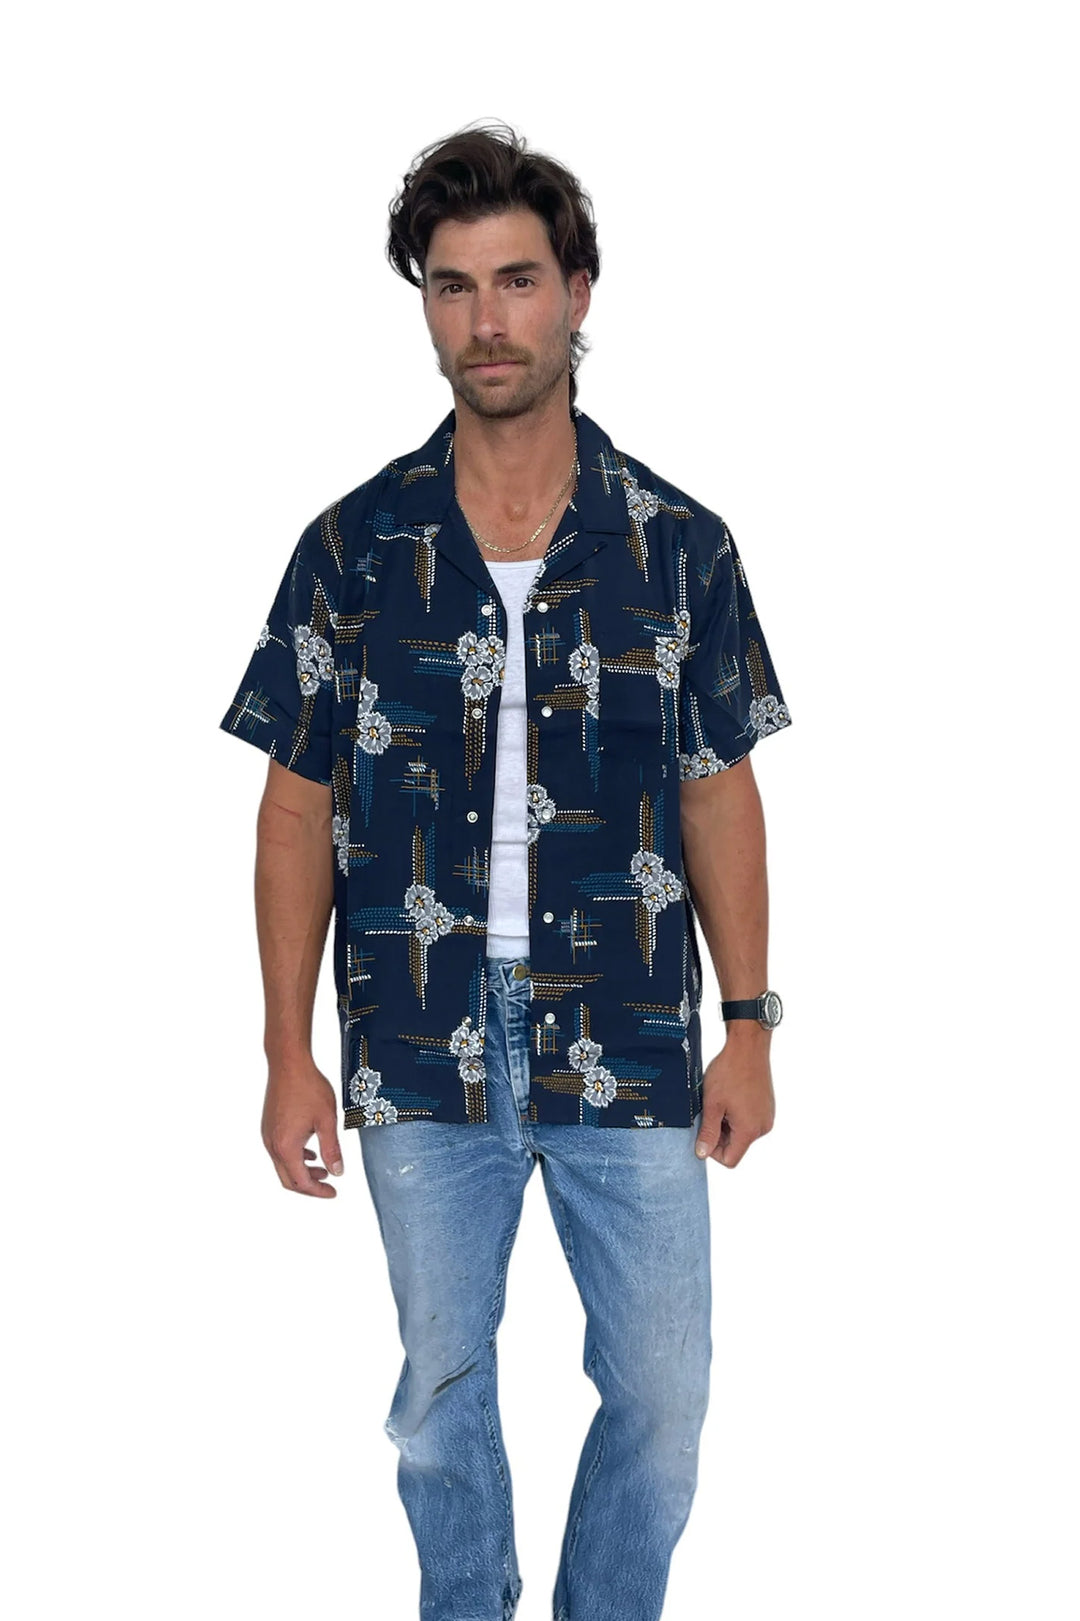 Del Mar Men's Shirt Navy Multi